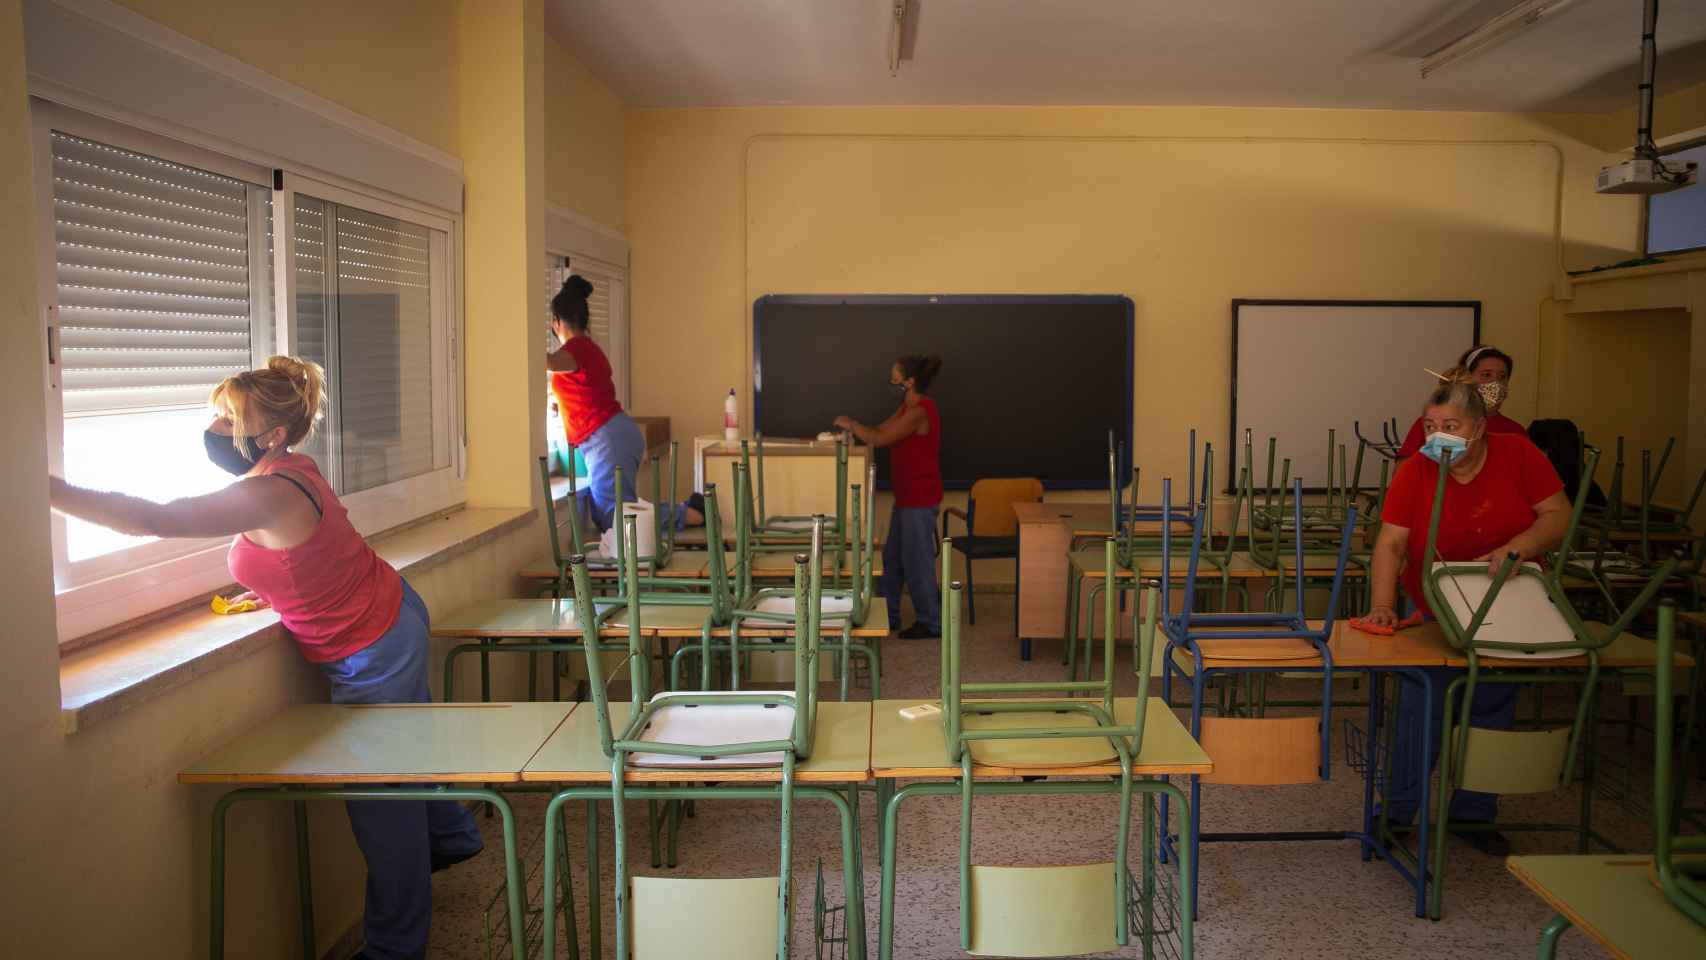 Trabajos de limpieza del 'Plan Covid19' en centros educativos desarrollado por el ayuntamiento de La Rinconada, Sevilla.